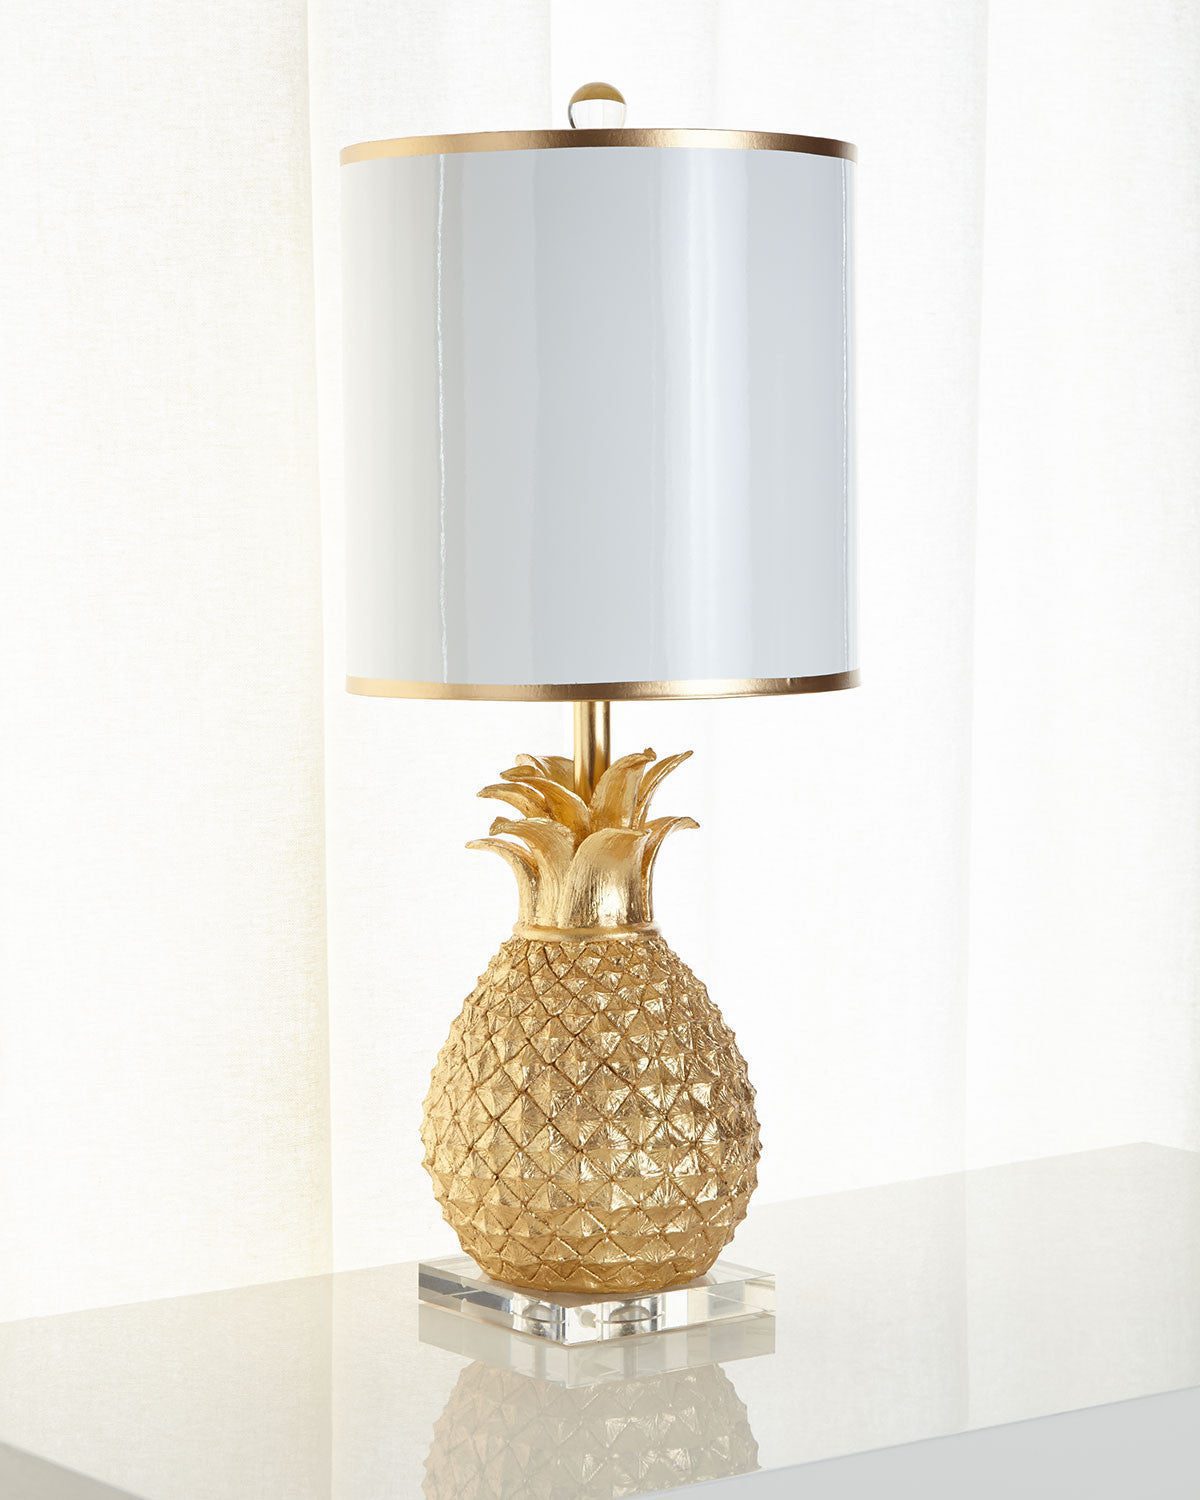 Золотая настольная лампа "Милтон" - это основание в виде золотого ананаса установлено на подставку из прозрачного акрила.